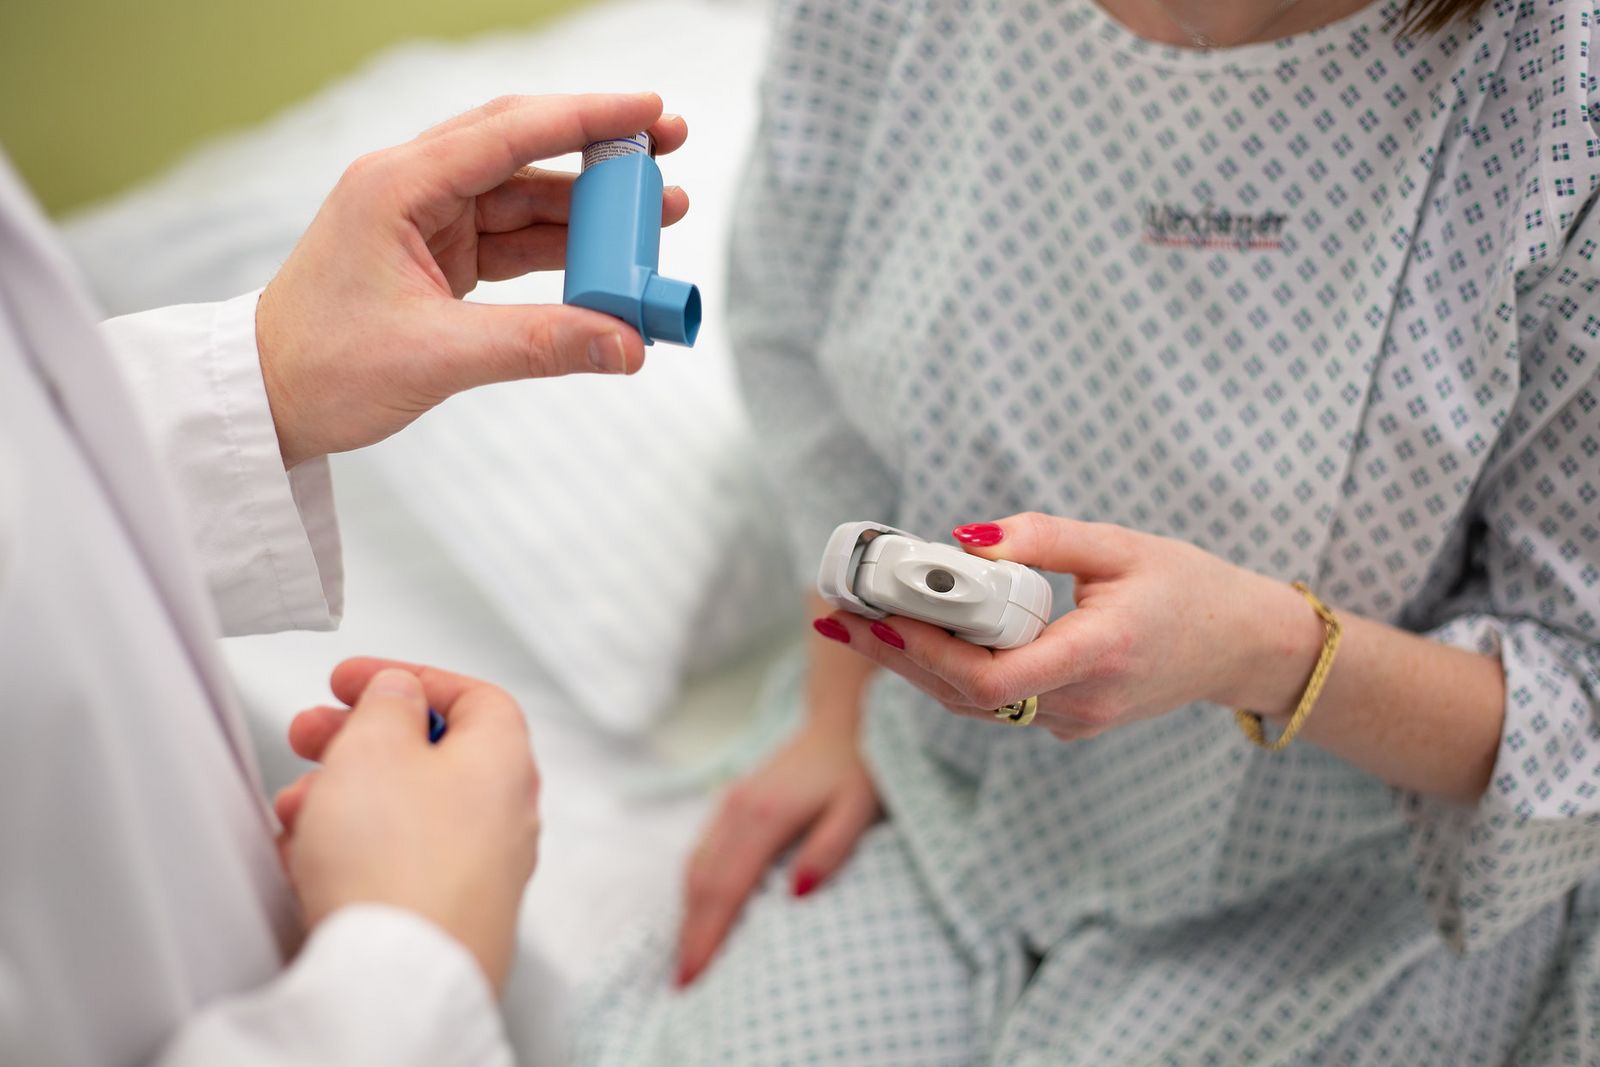 Apotheker erklärt Patientin die richtige Anwendung eines Inhalators